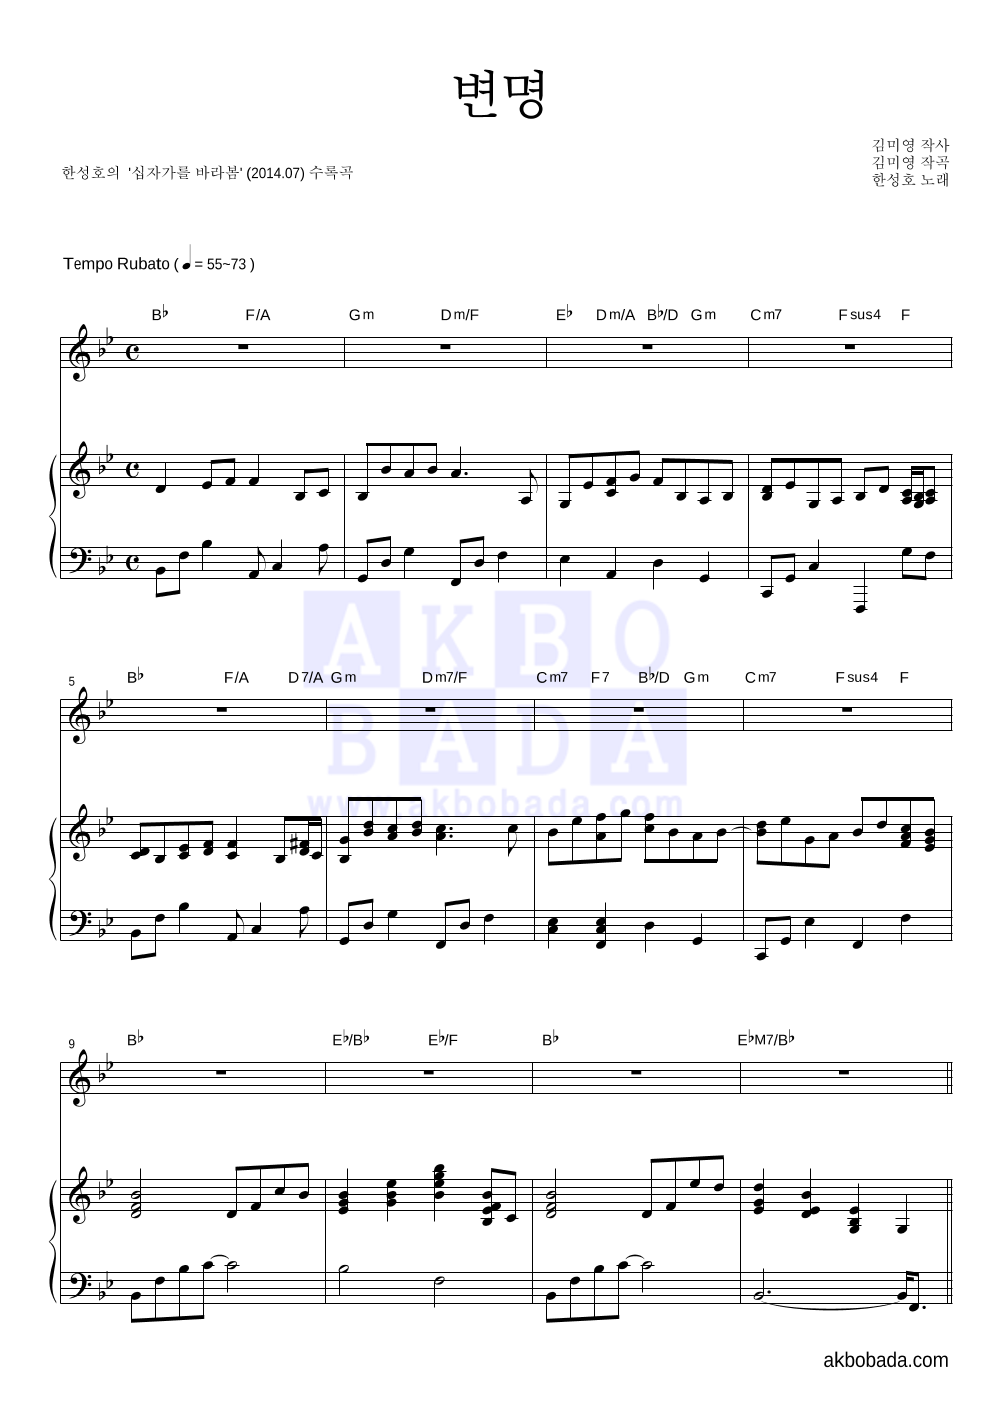 한성호(CCM) - 변명 피아노 3단 악보 